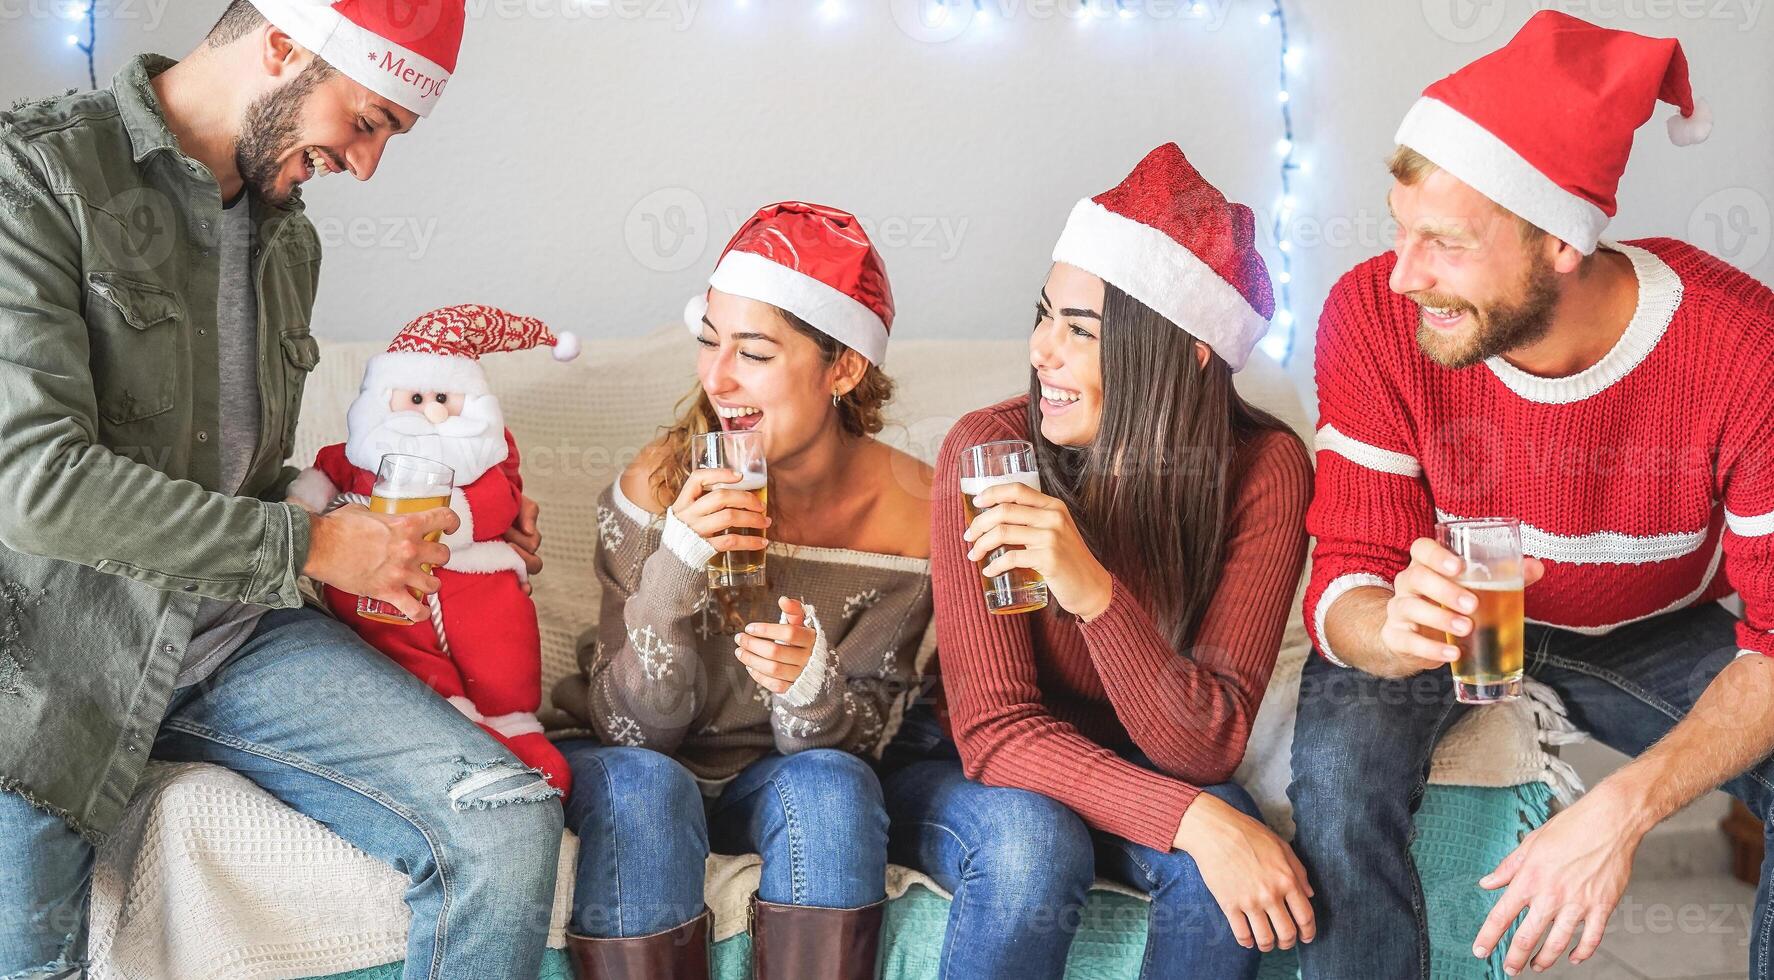 gelukkig vrienden hebben pret gedurende Kerstmis tijd zittend Aan sofa Bij huis - jong mensen drinken bier samen en genieten van Kerstmis vakantie - jeugd viering Kerstmis concept foto